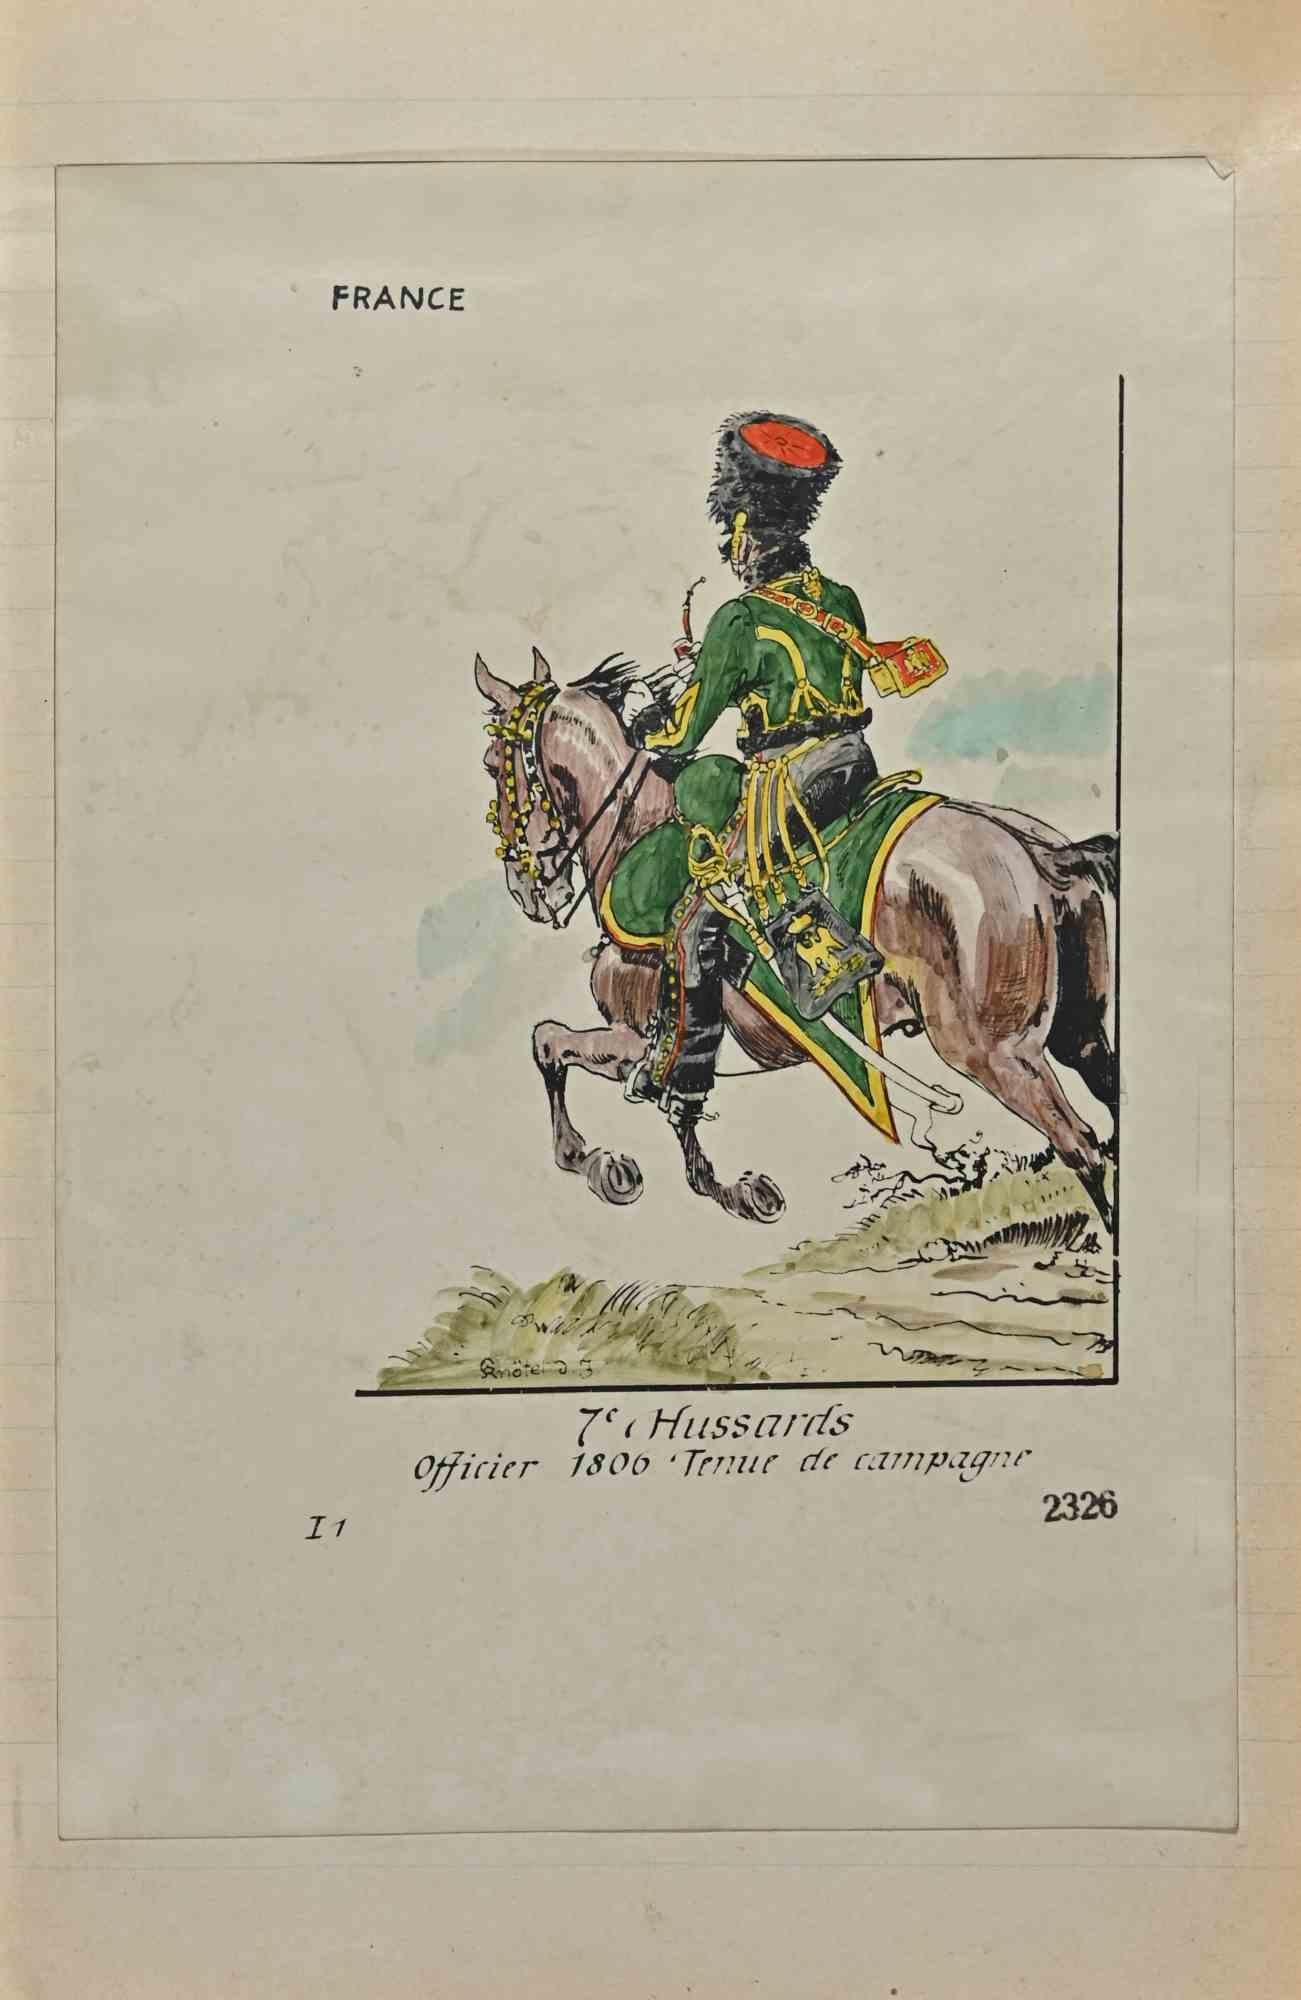 7e Hussards - Zeichnung von Herbert Knotel - 1940er Jahre